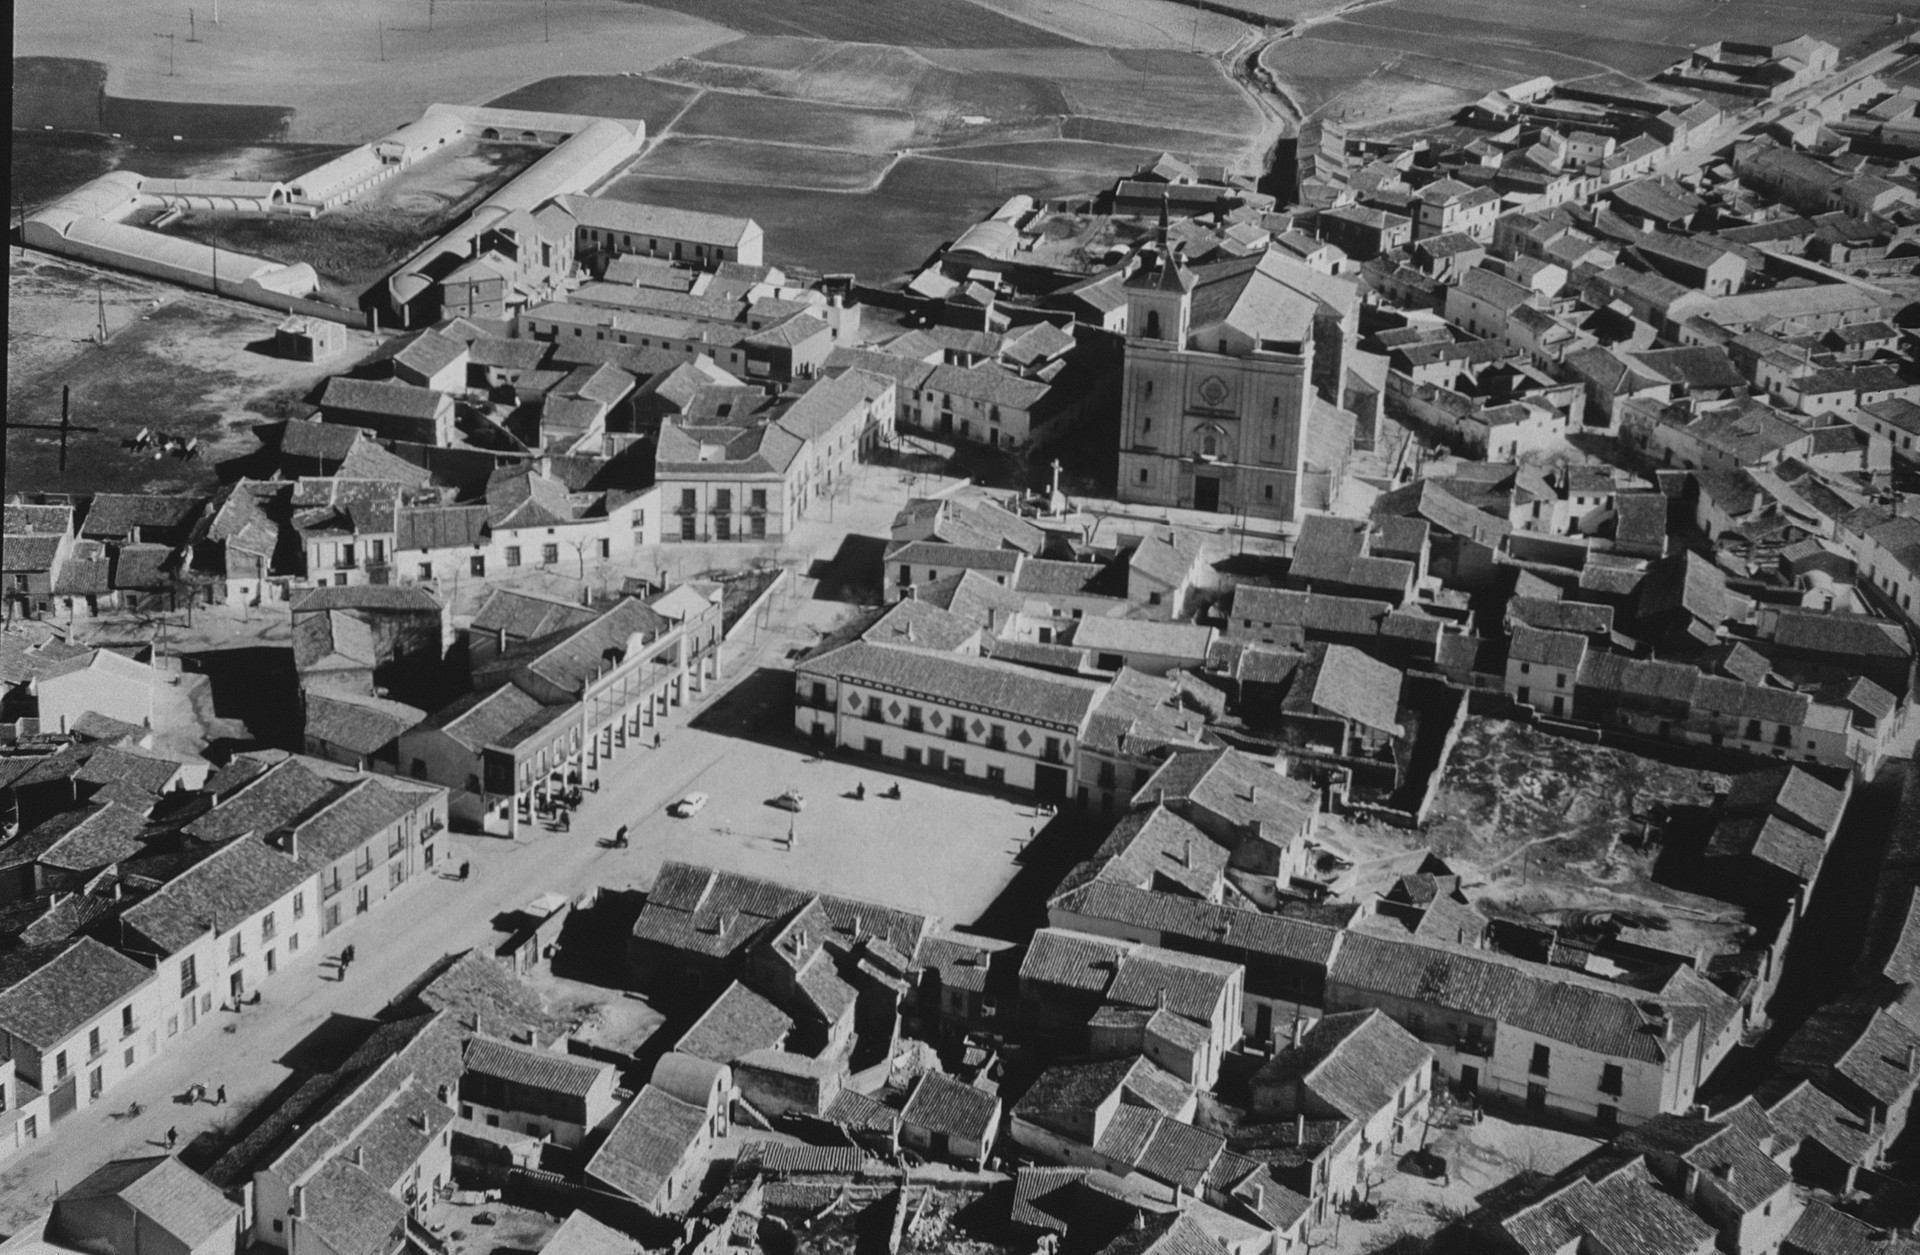 Vista aérea del casco histórico de Fuenlabrada antes de los años 80